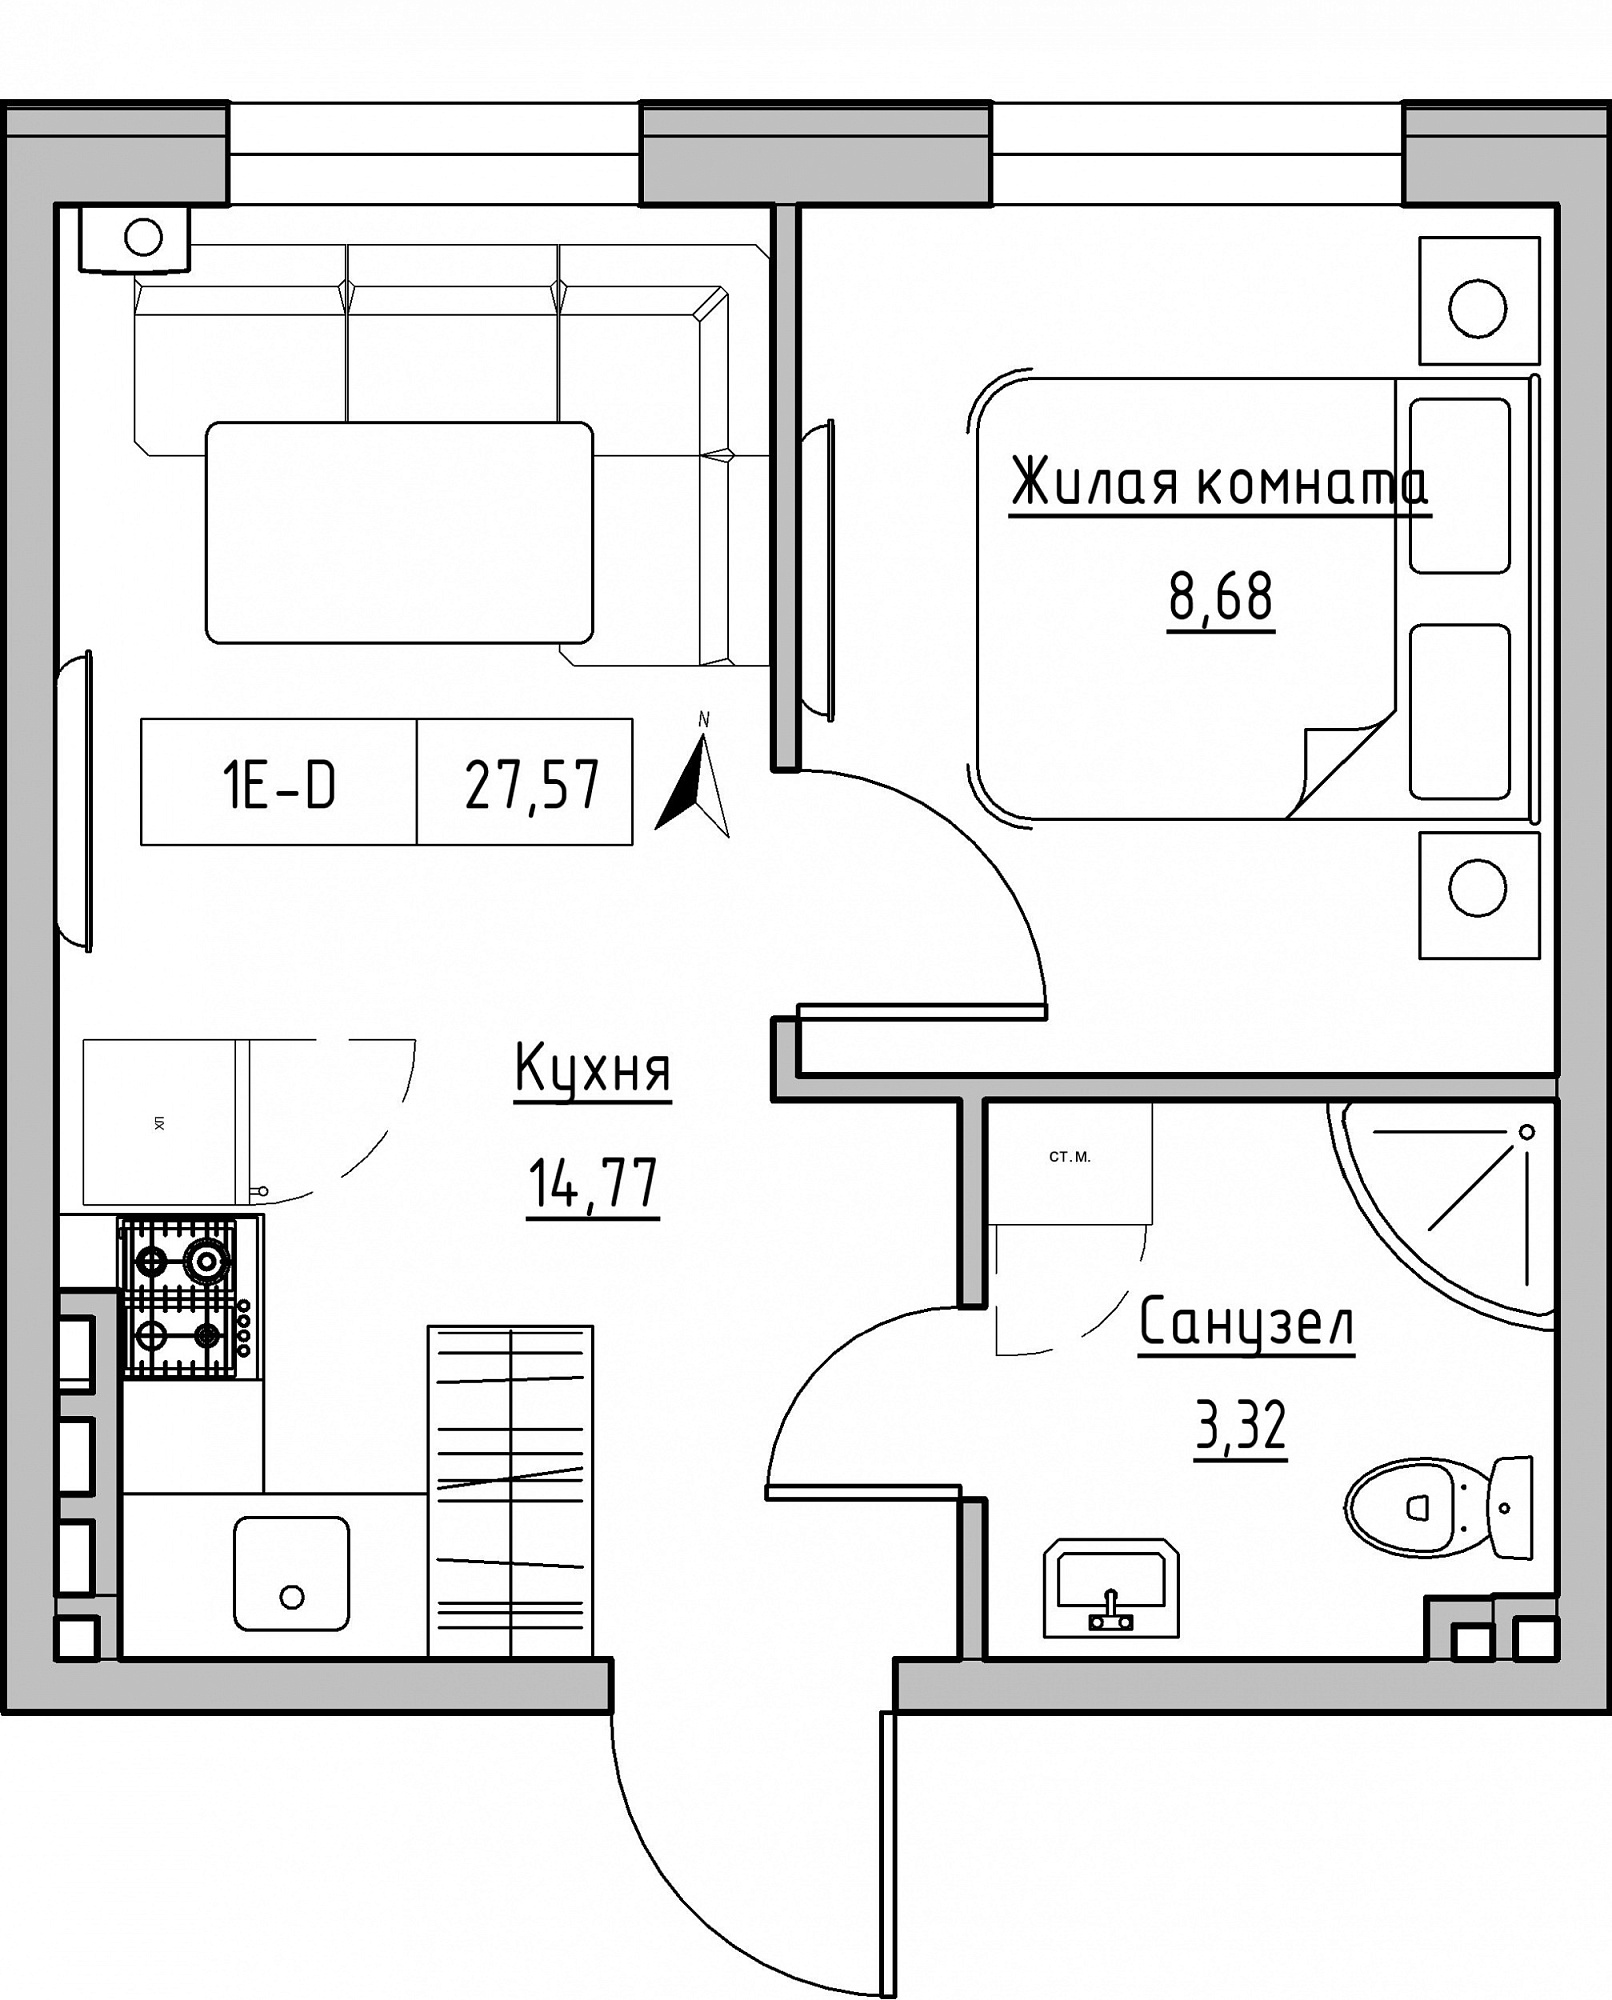 Планування 1-к квартира площею 27.57м2, KS-024-03/0002.